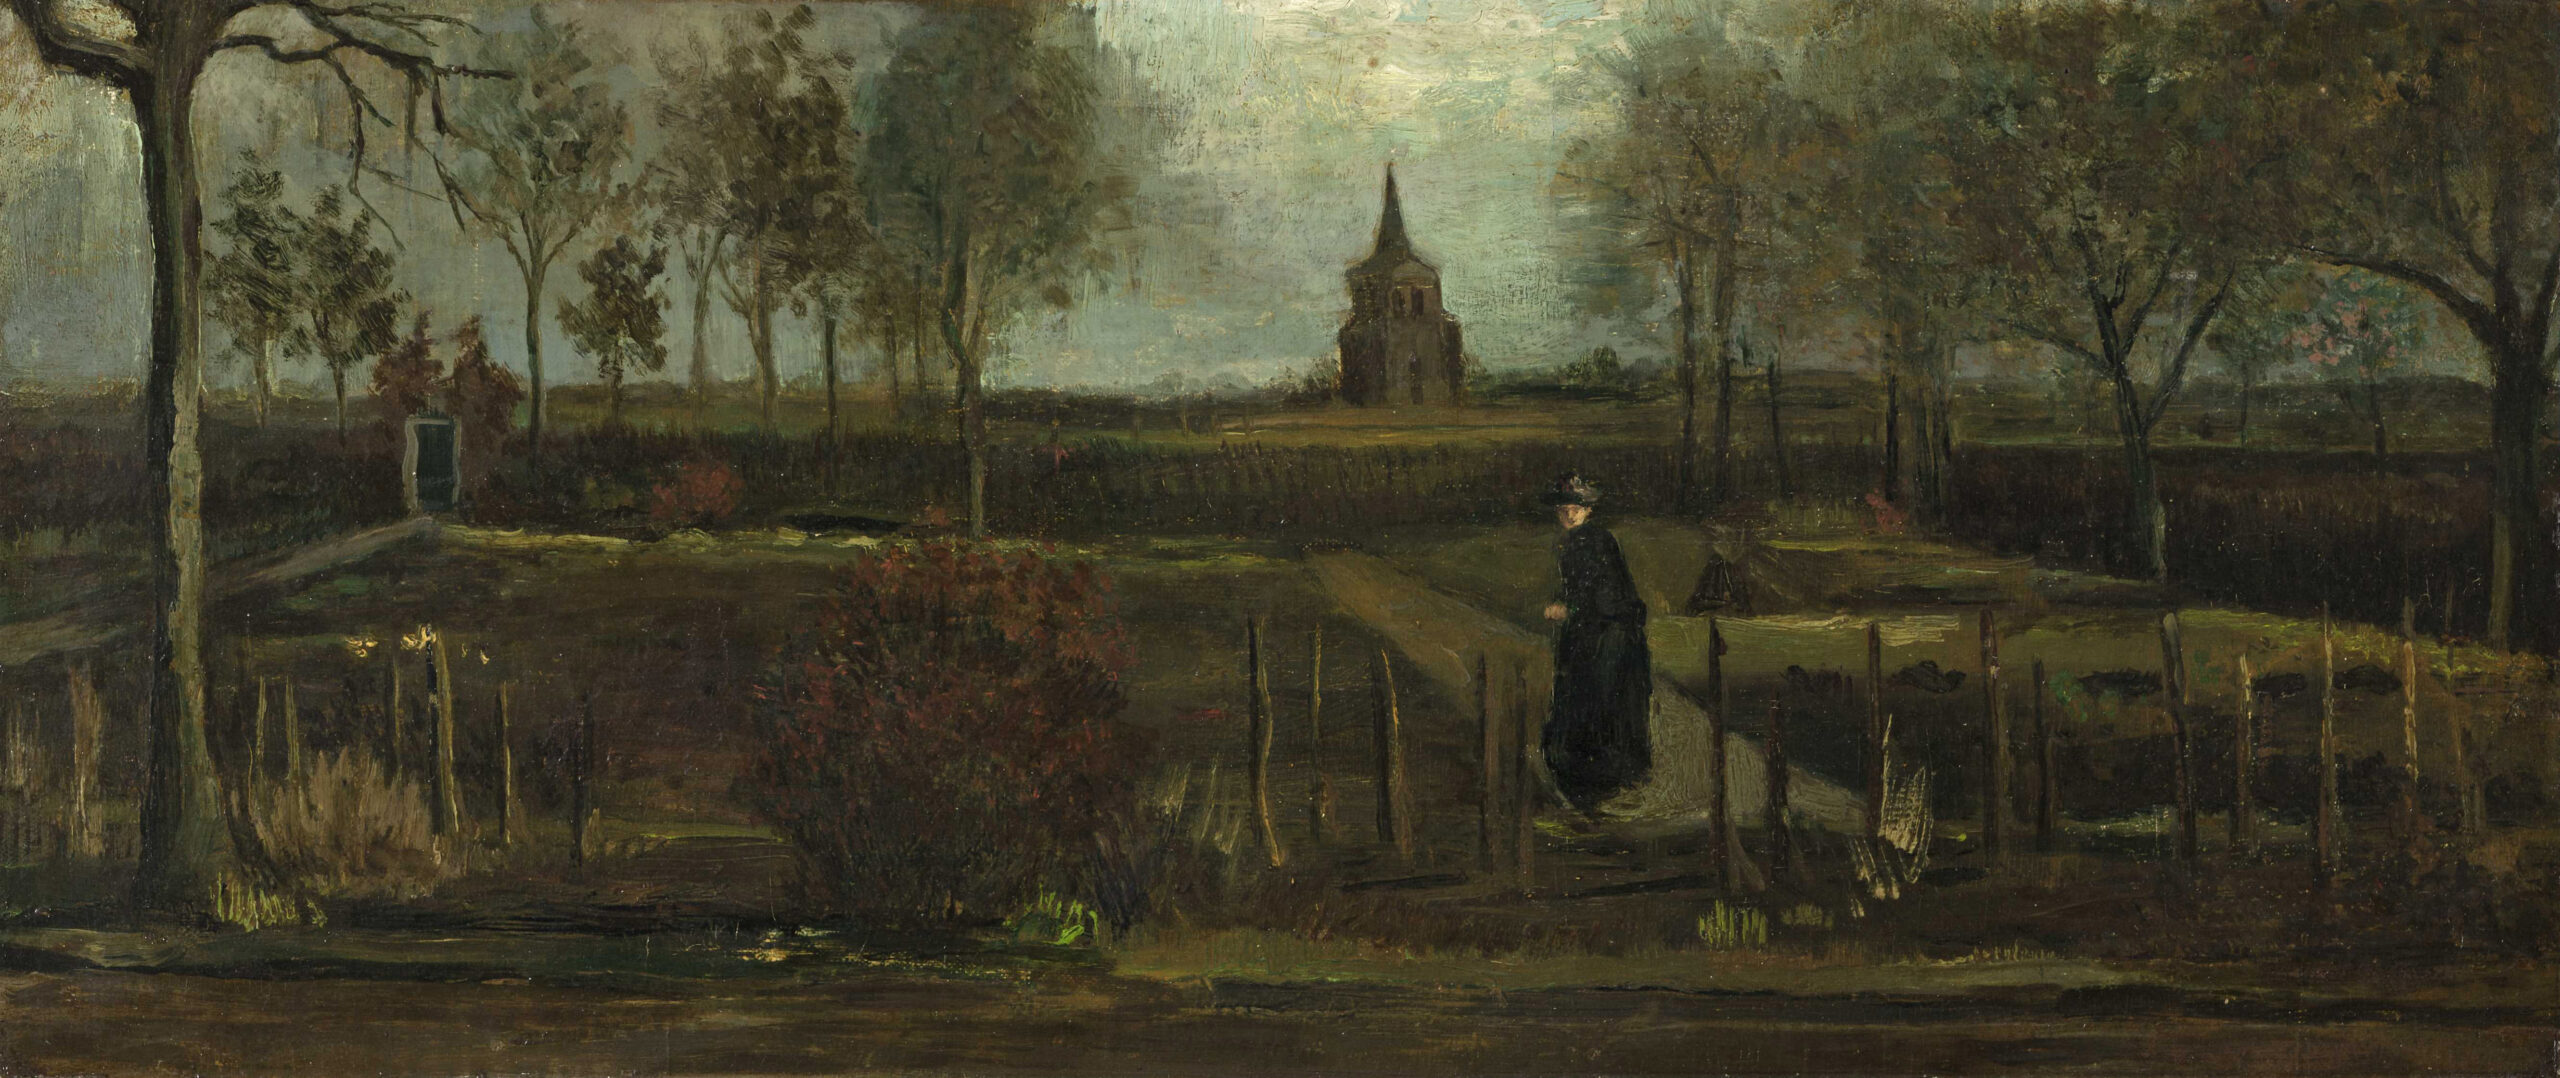 Van Gogh - The Parsonage Garden at Nuenen